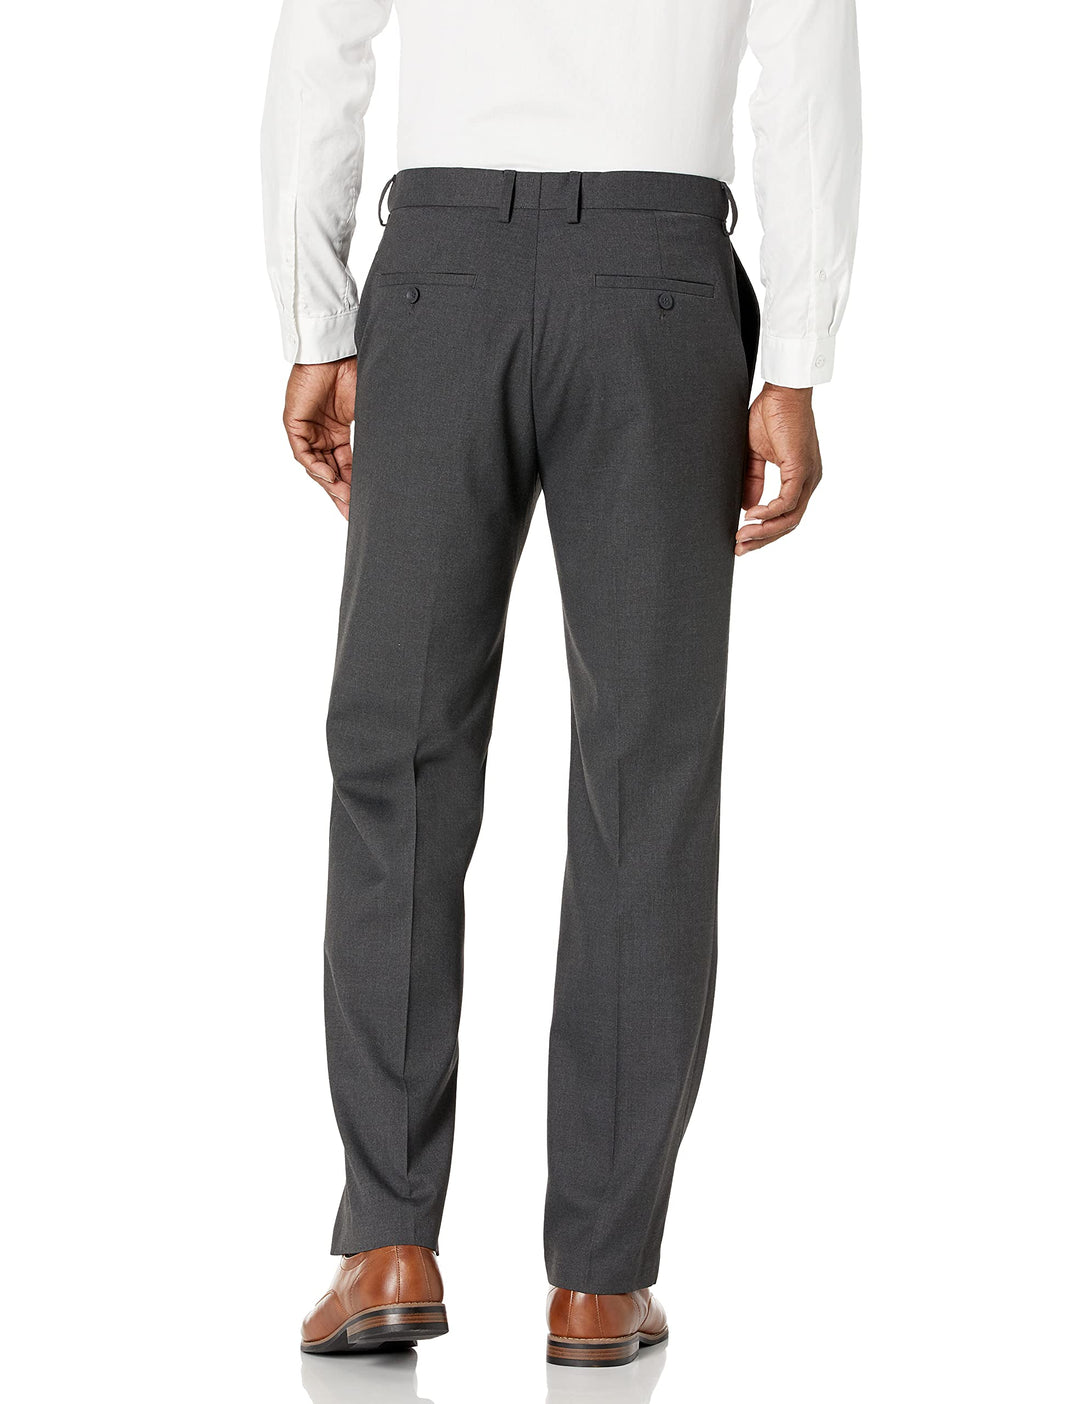 J.M. Haggar Men's 4-Way Stretch Dress Pant, Medium Grey, 42Wx30L